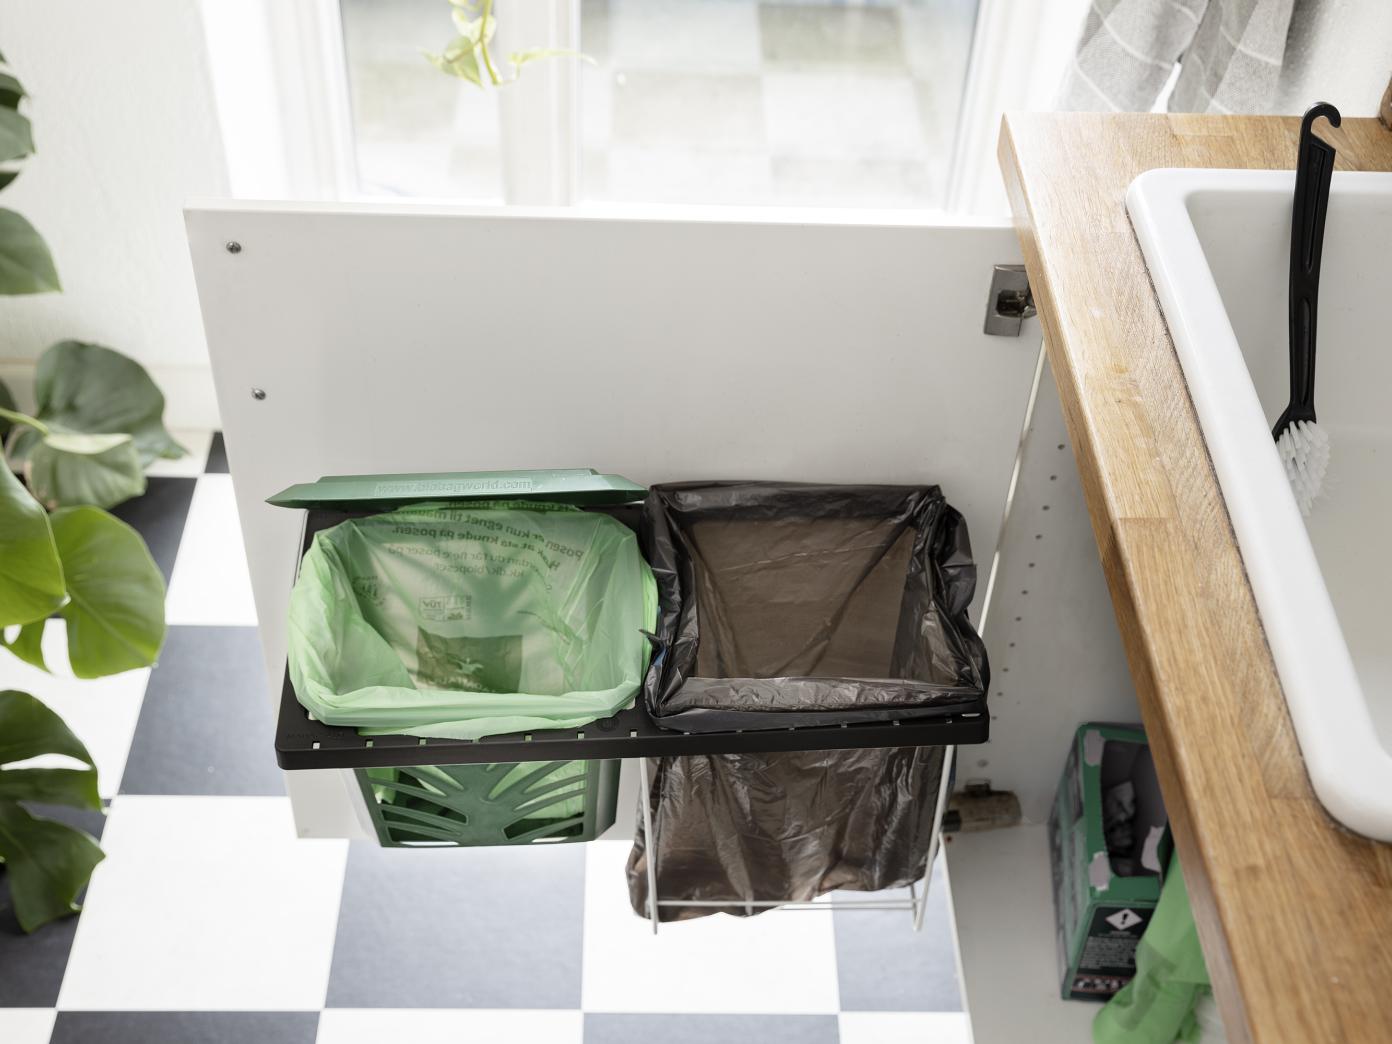 På en køkkenlåge under vasken er fastgjort et traditionelt skraldestativ i metal. På skraldestativet er monteret en holder, som køkkenkurven kan sidde i. Skraldestativet kan nu have både affaldspose og den grønne kurv til madaffald.